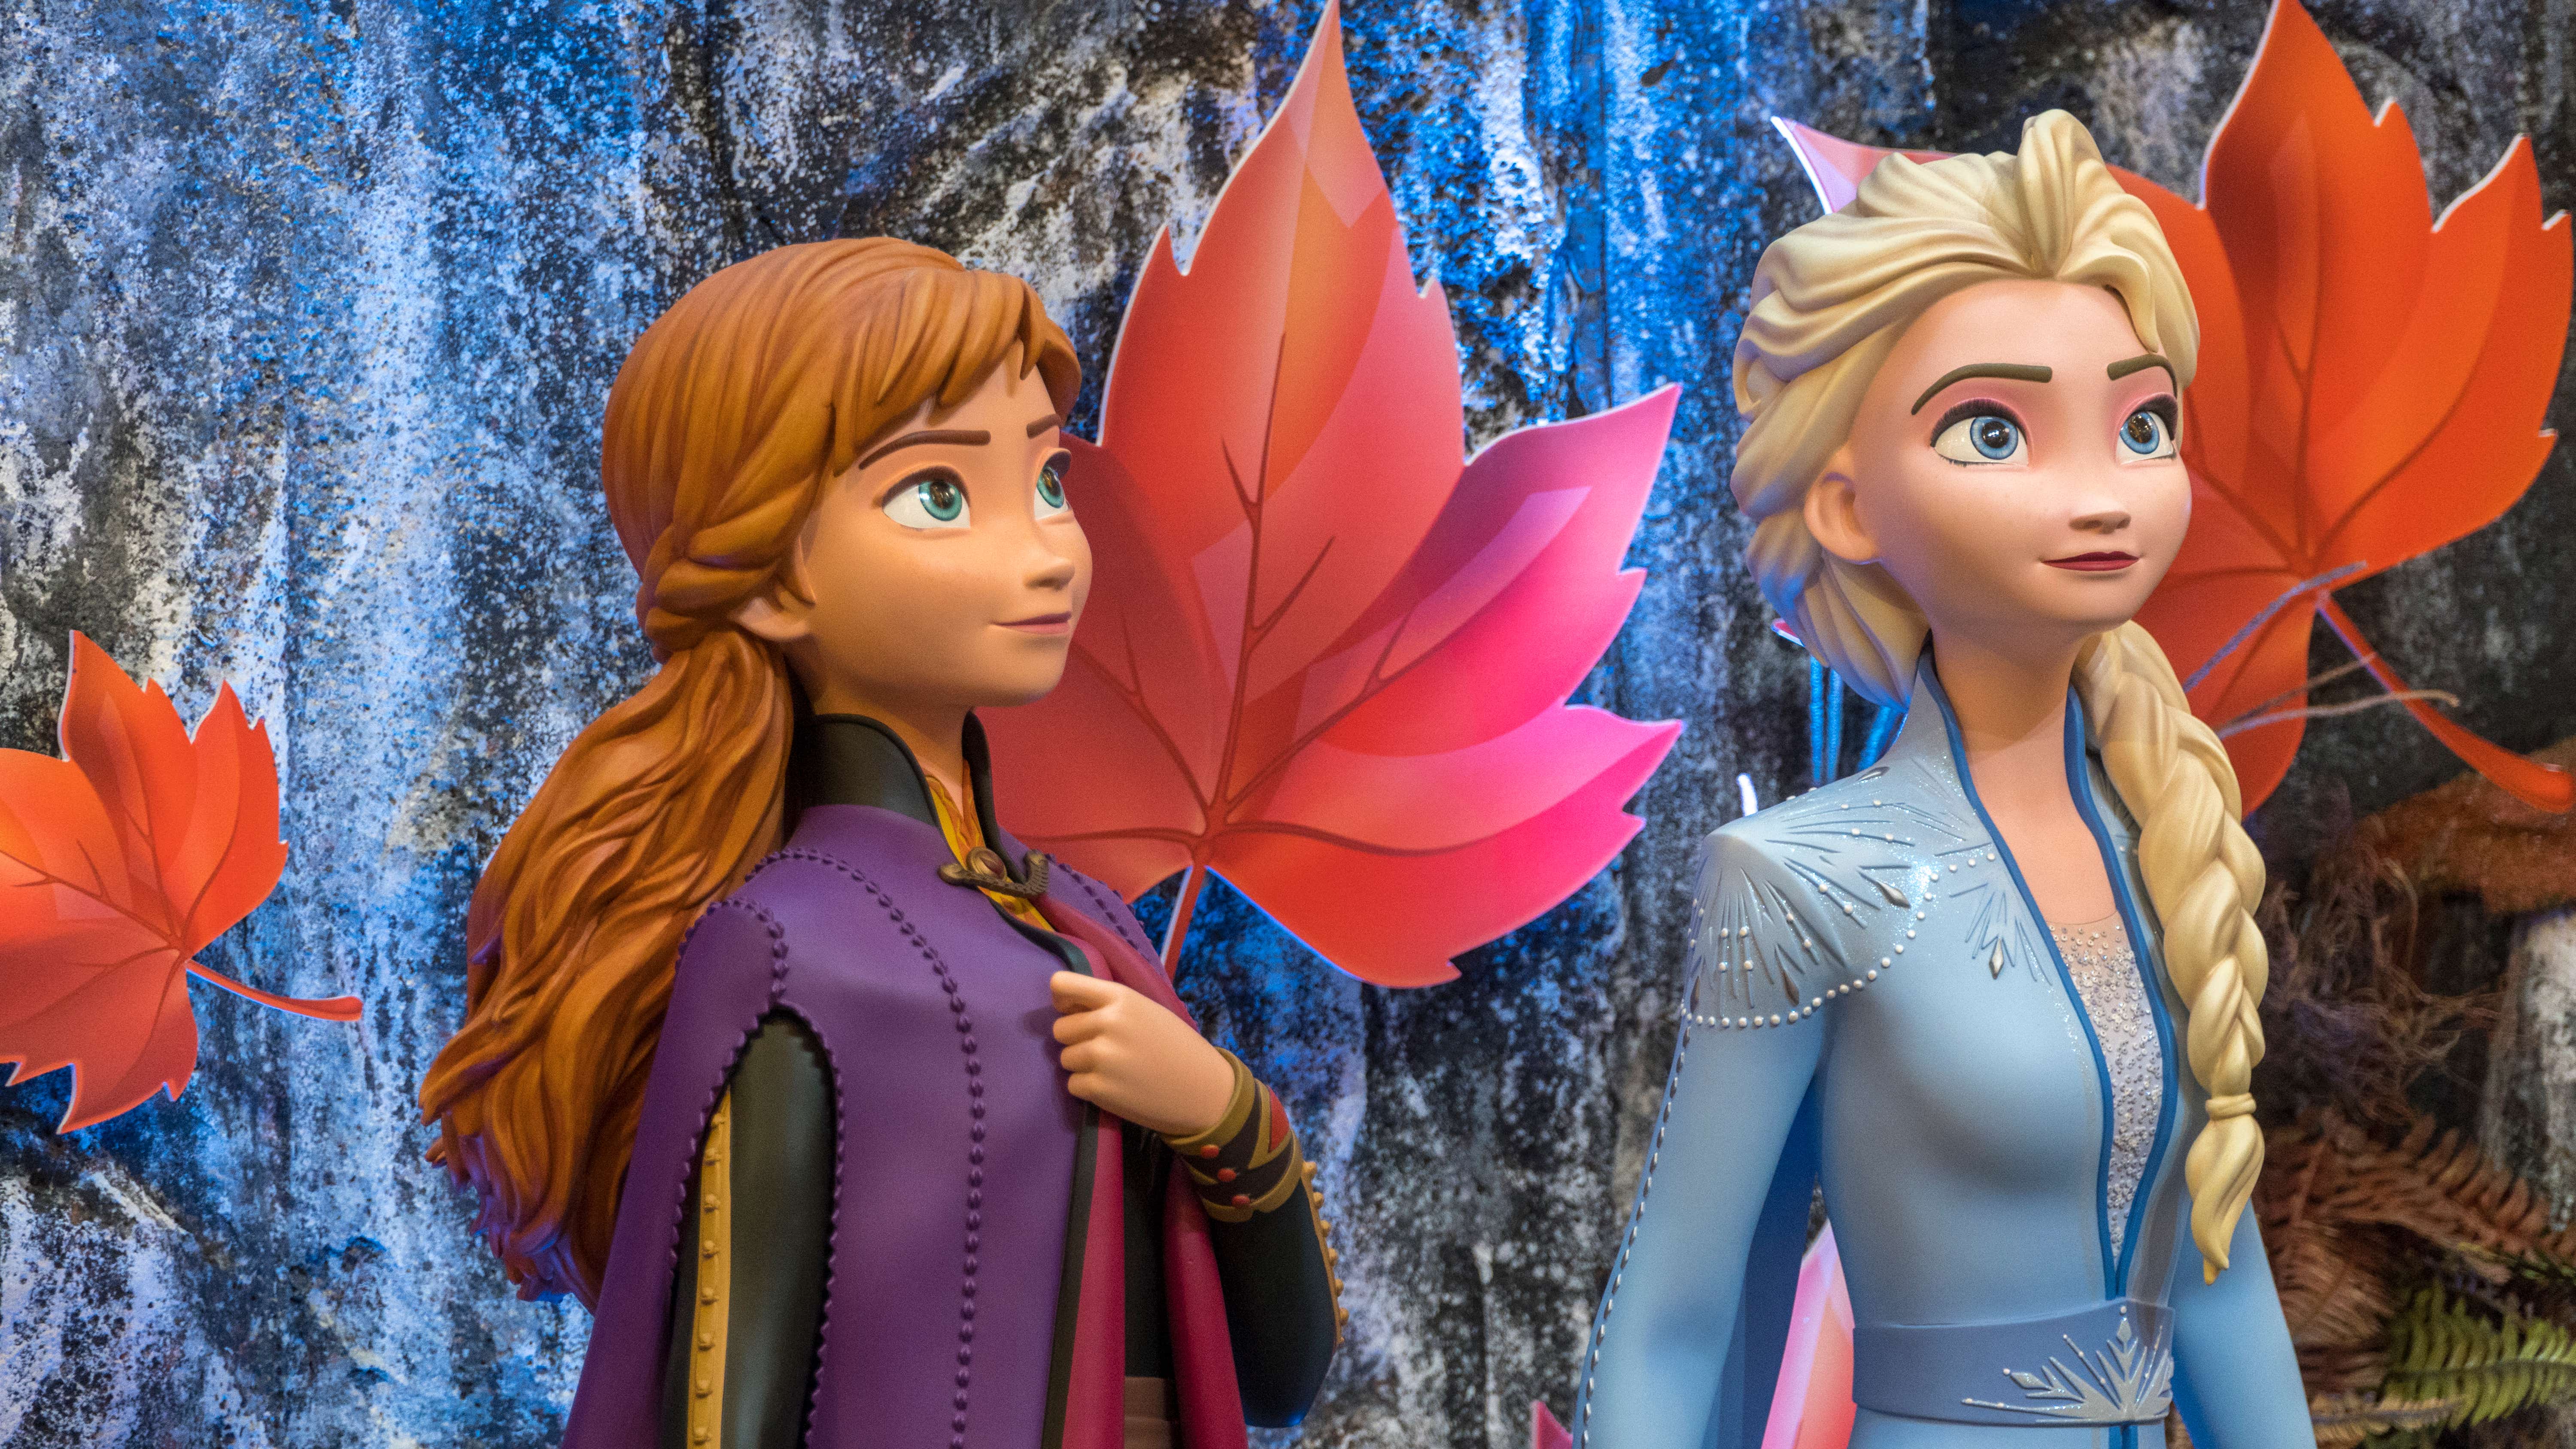 Elsa Frozen 2 VS Disney Princesses 